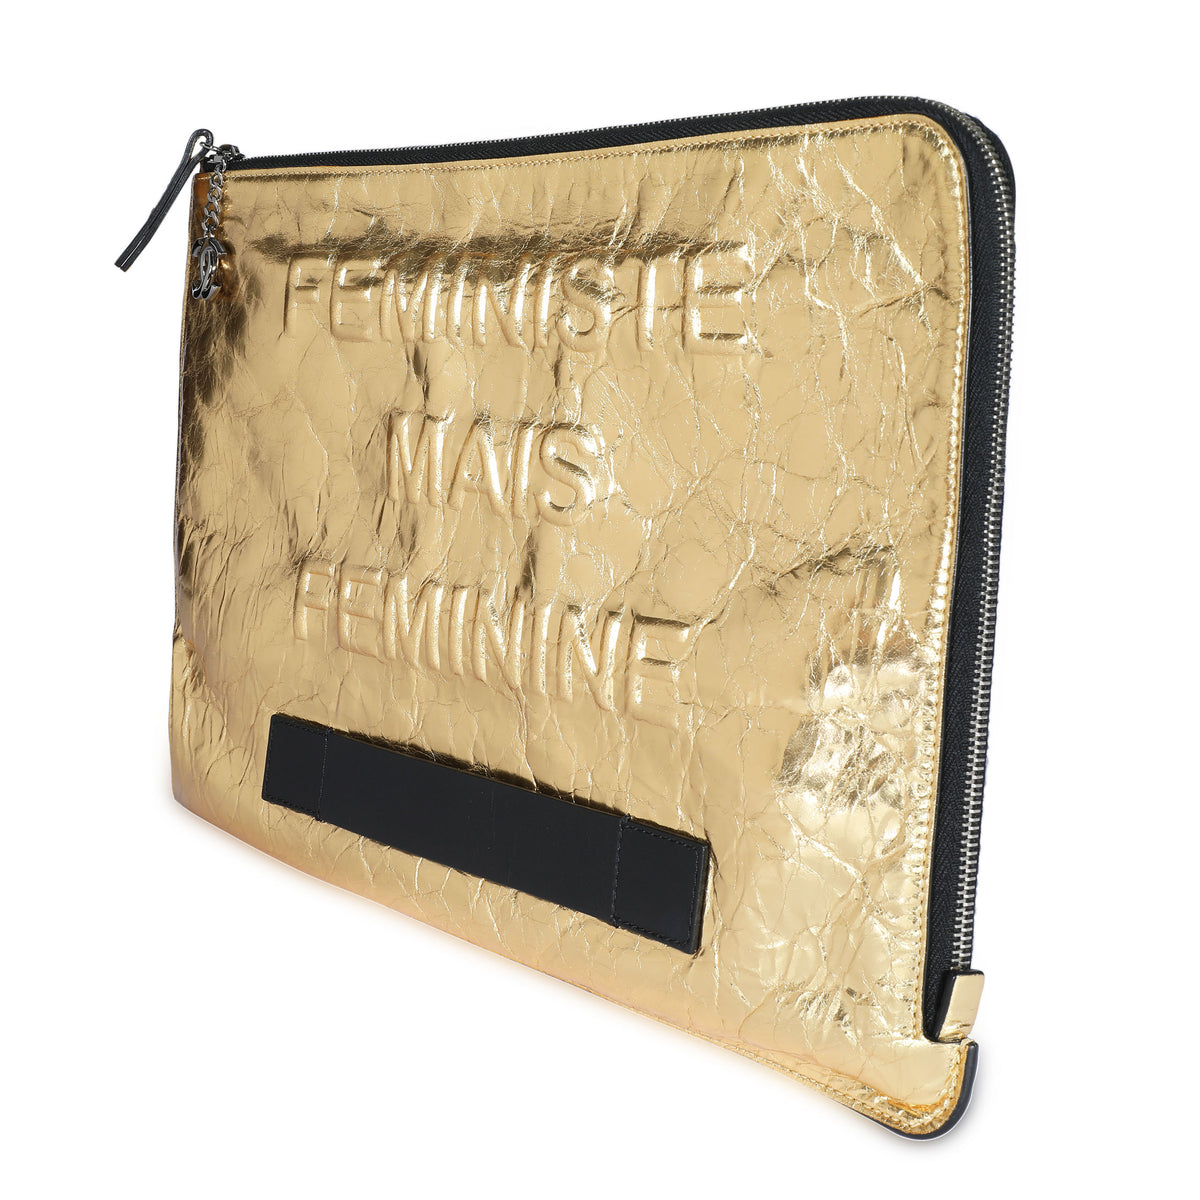 Chanel Metallic Gold Calfskin Feministe Mais Feminine Clutch